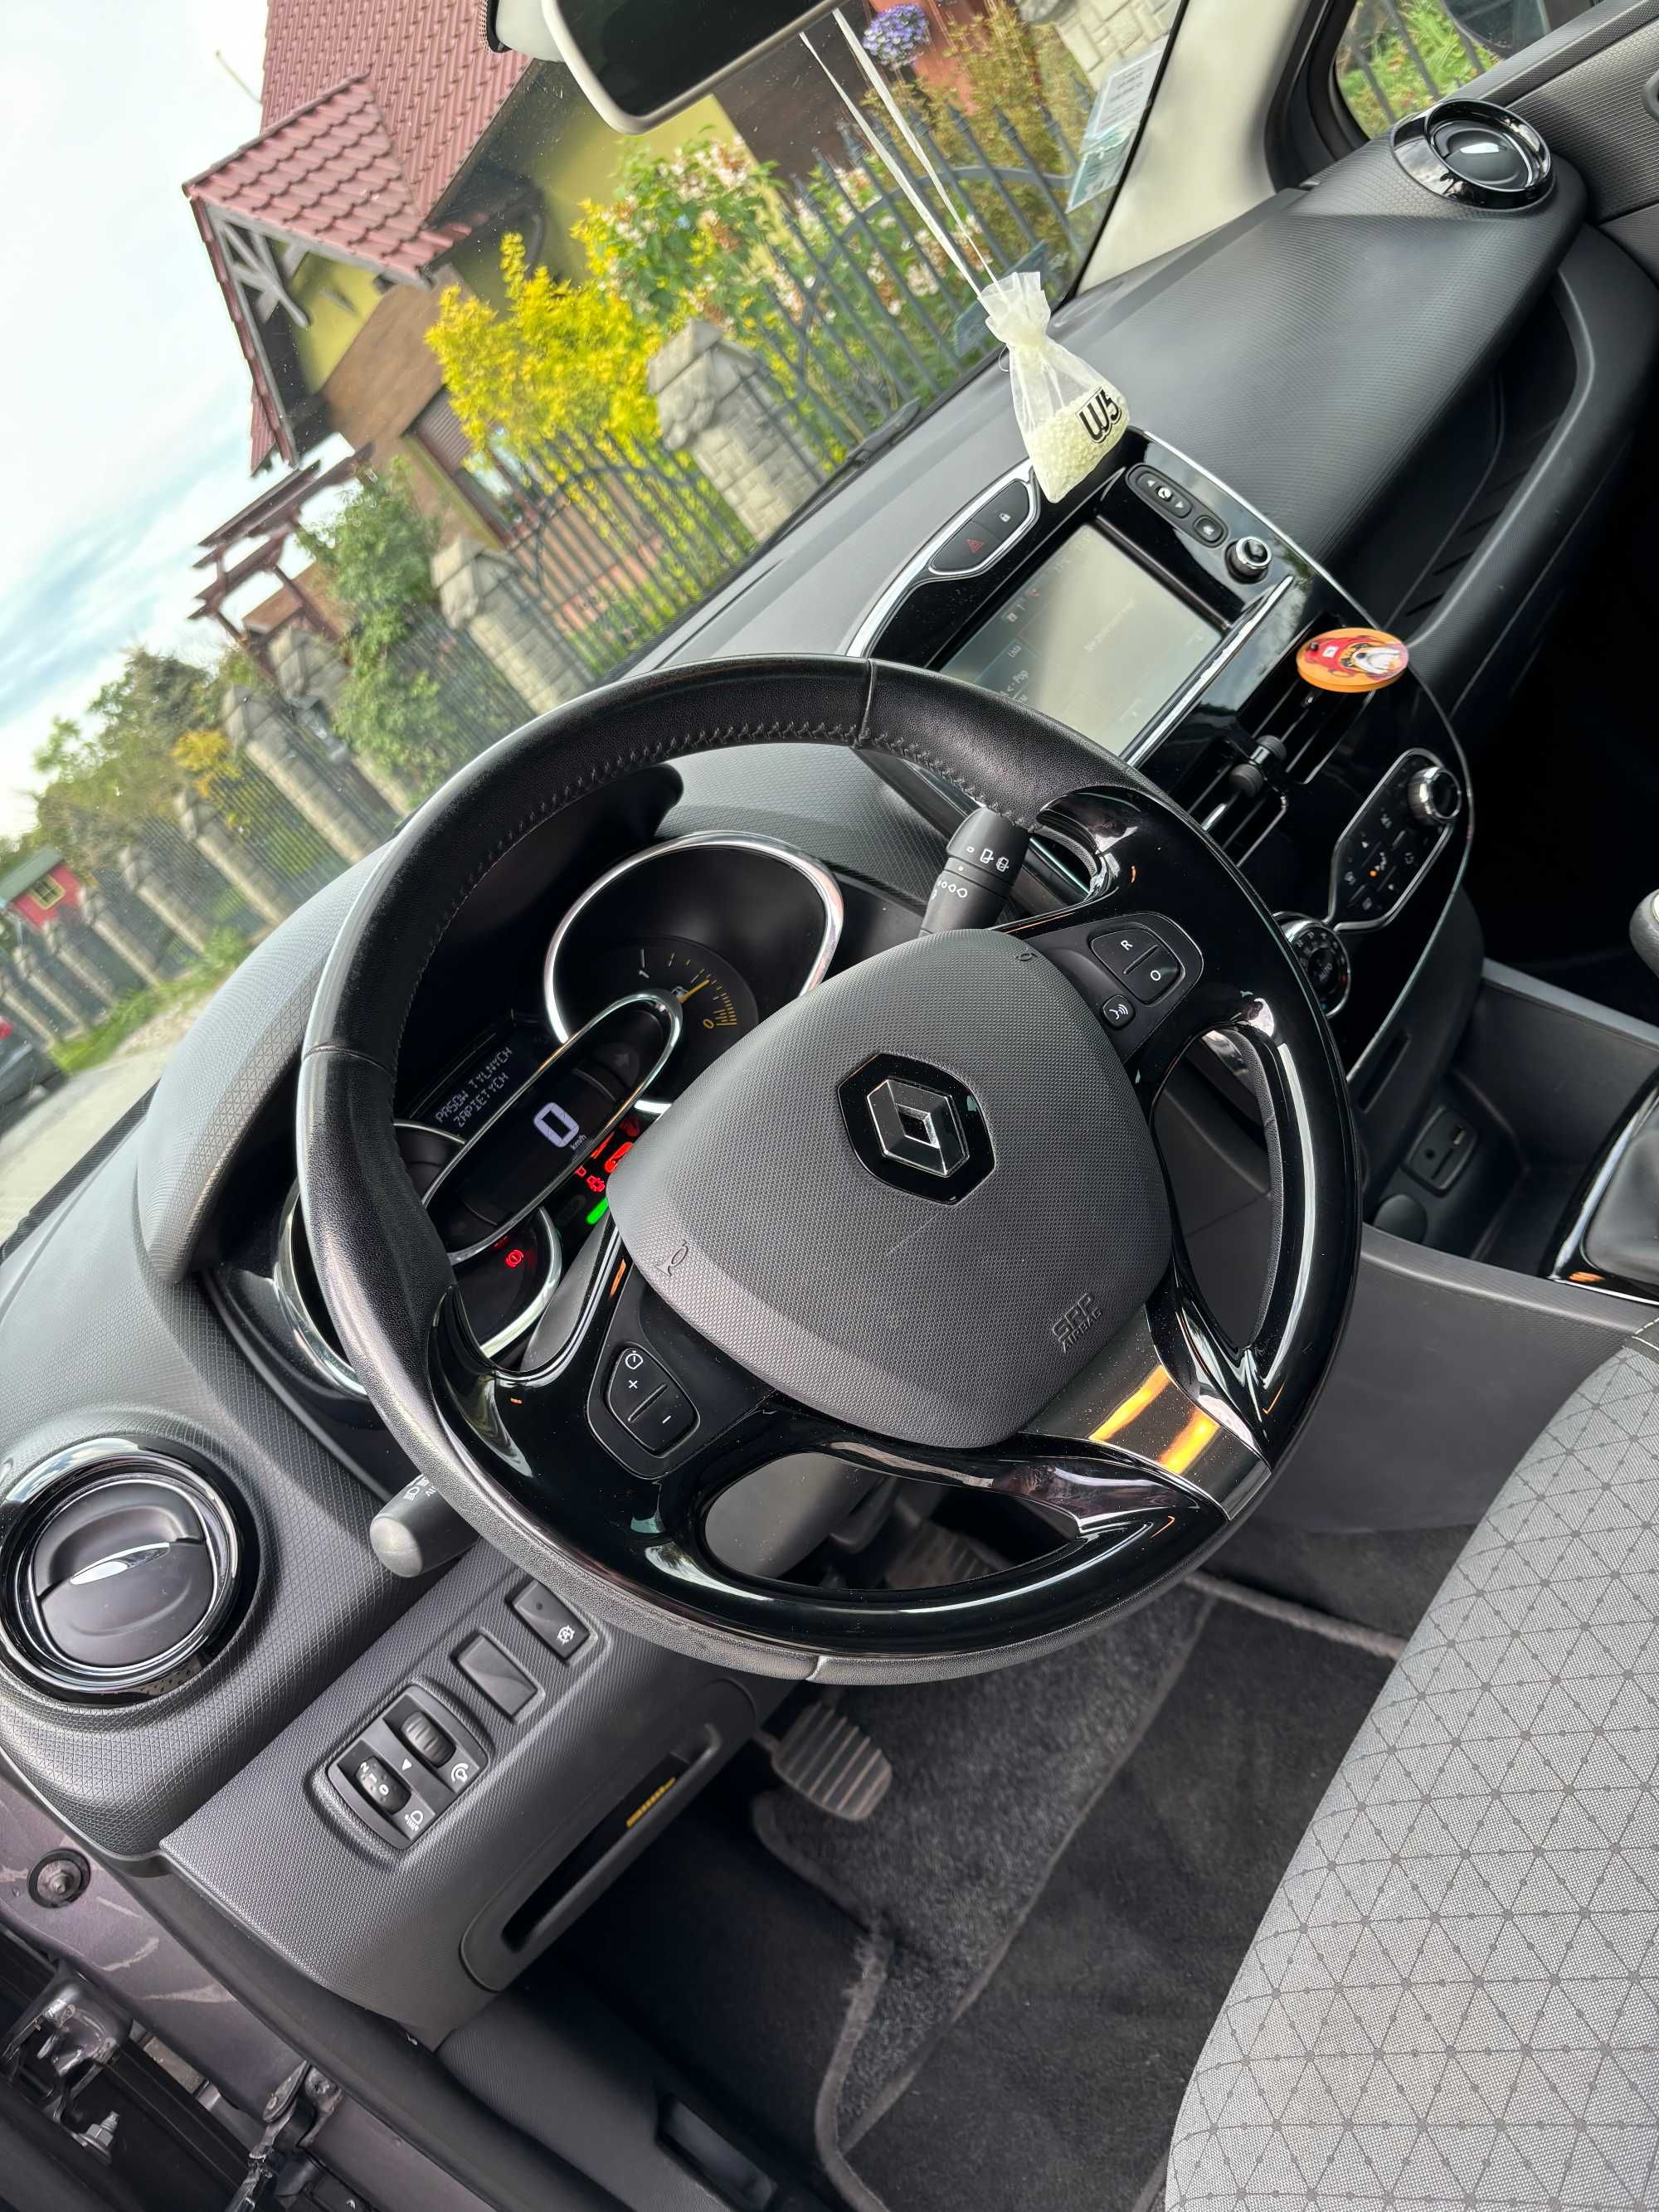 Renault Clio 1,5 dci 2013 rok